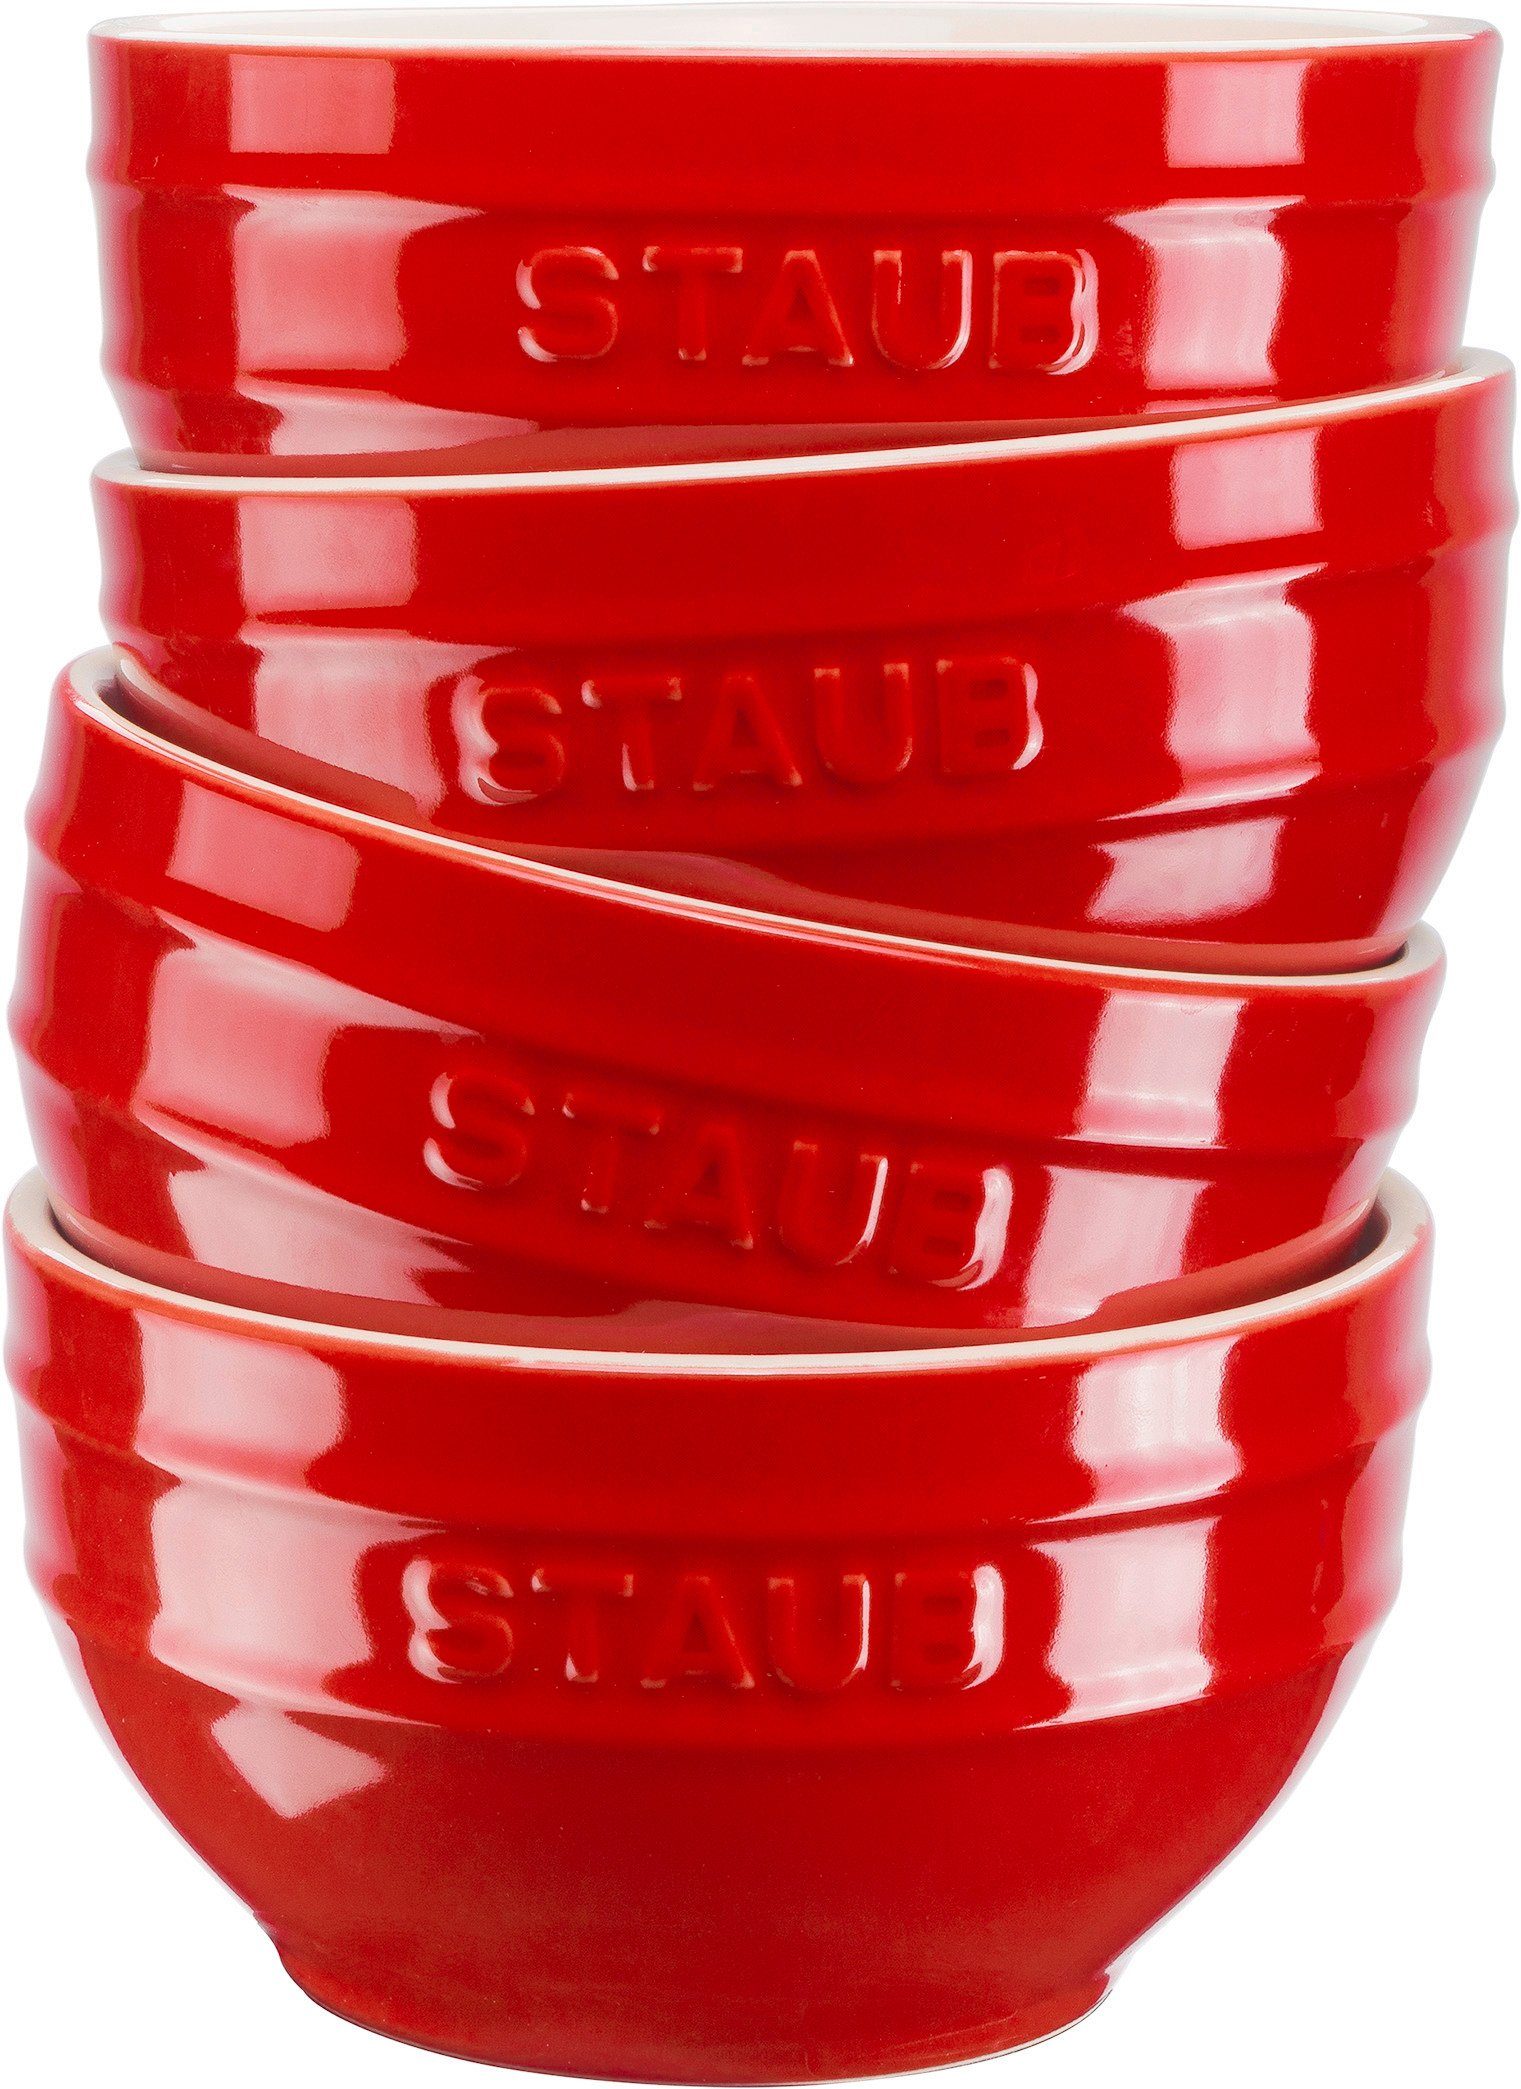 Schüsselset Staub Rot STAUB Müslischüssel Ceramique